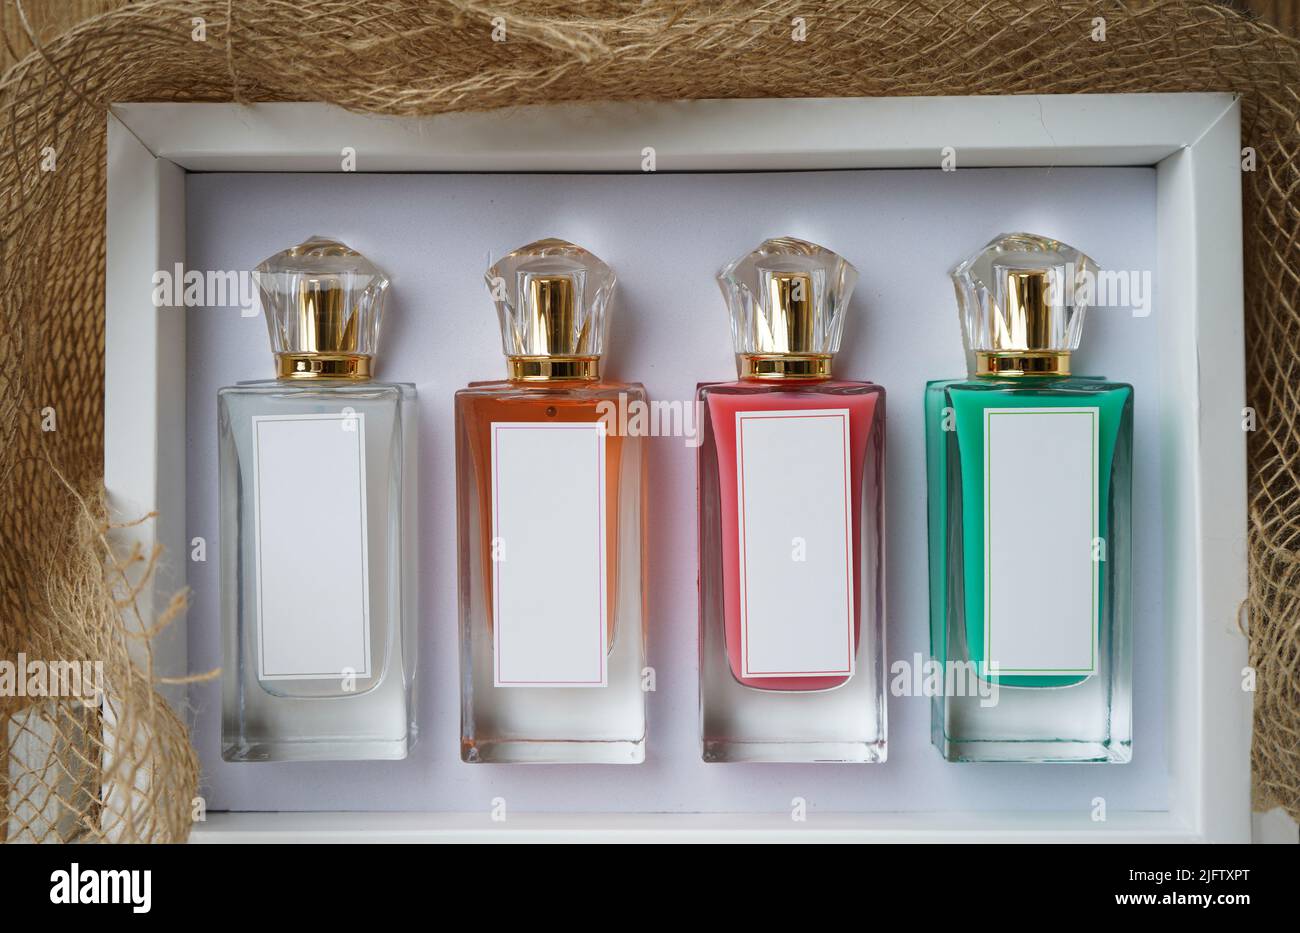 Boccagli in vetro profumato, flaconi cosmetici bianchi su modello di scatola. Con diversi colori di bottiglie rosso, bianco, arancione e verde profumo. Foto Stock